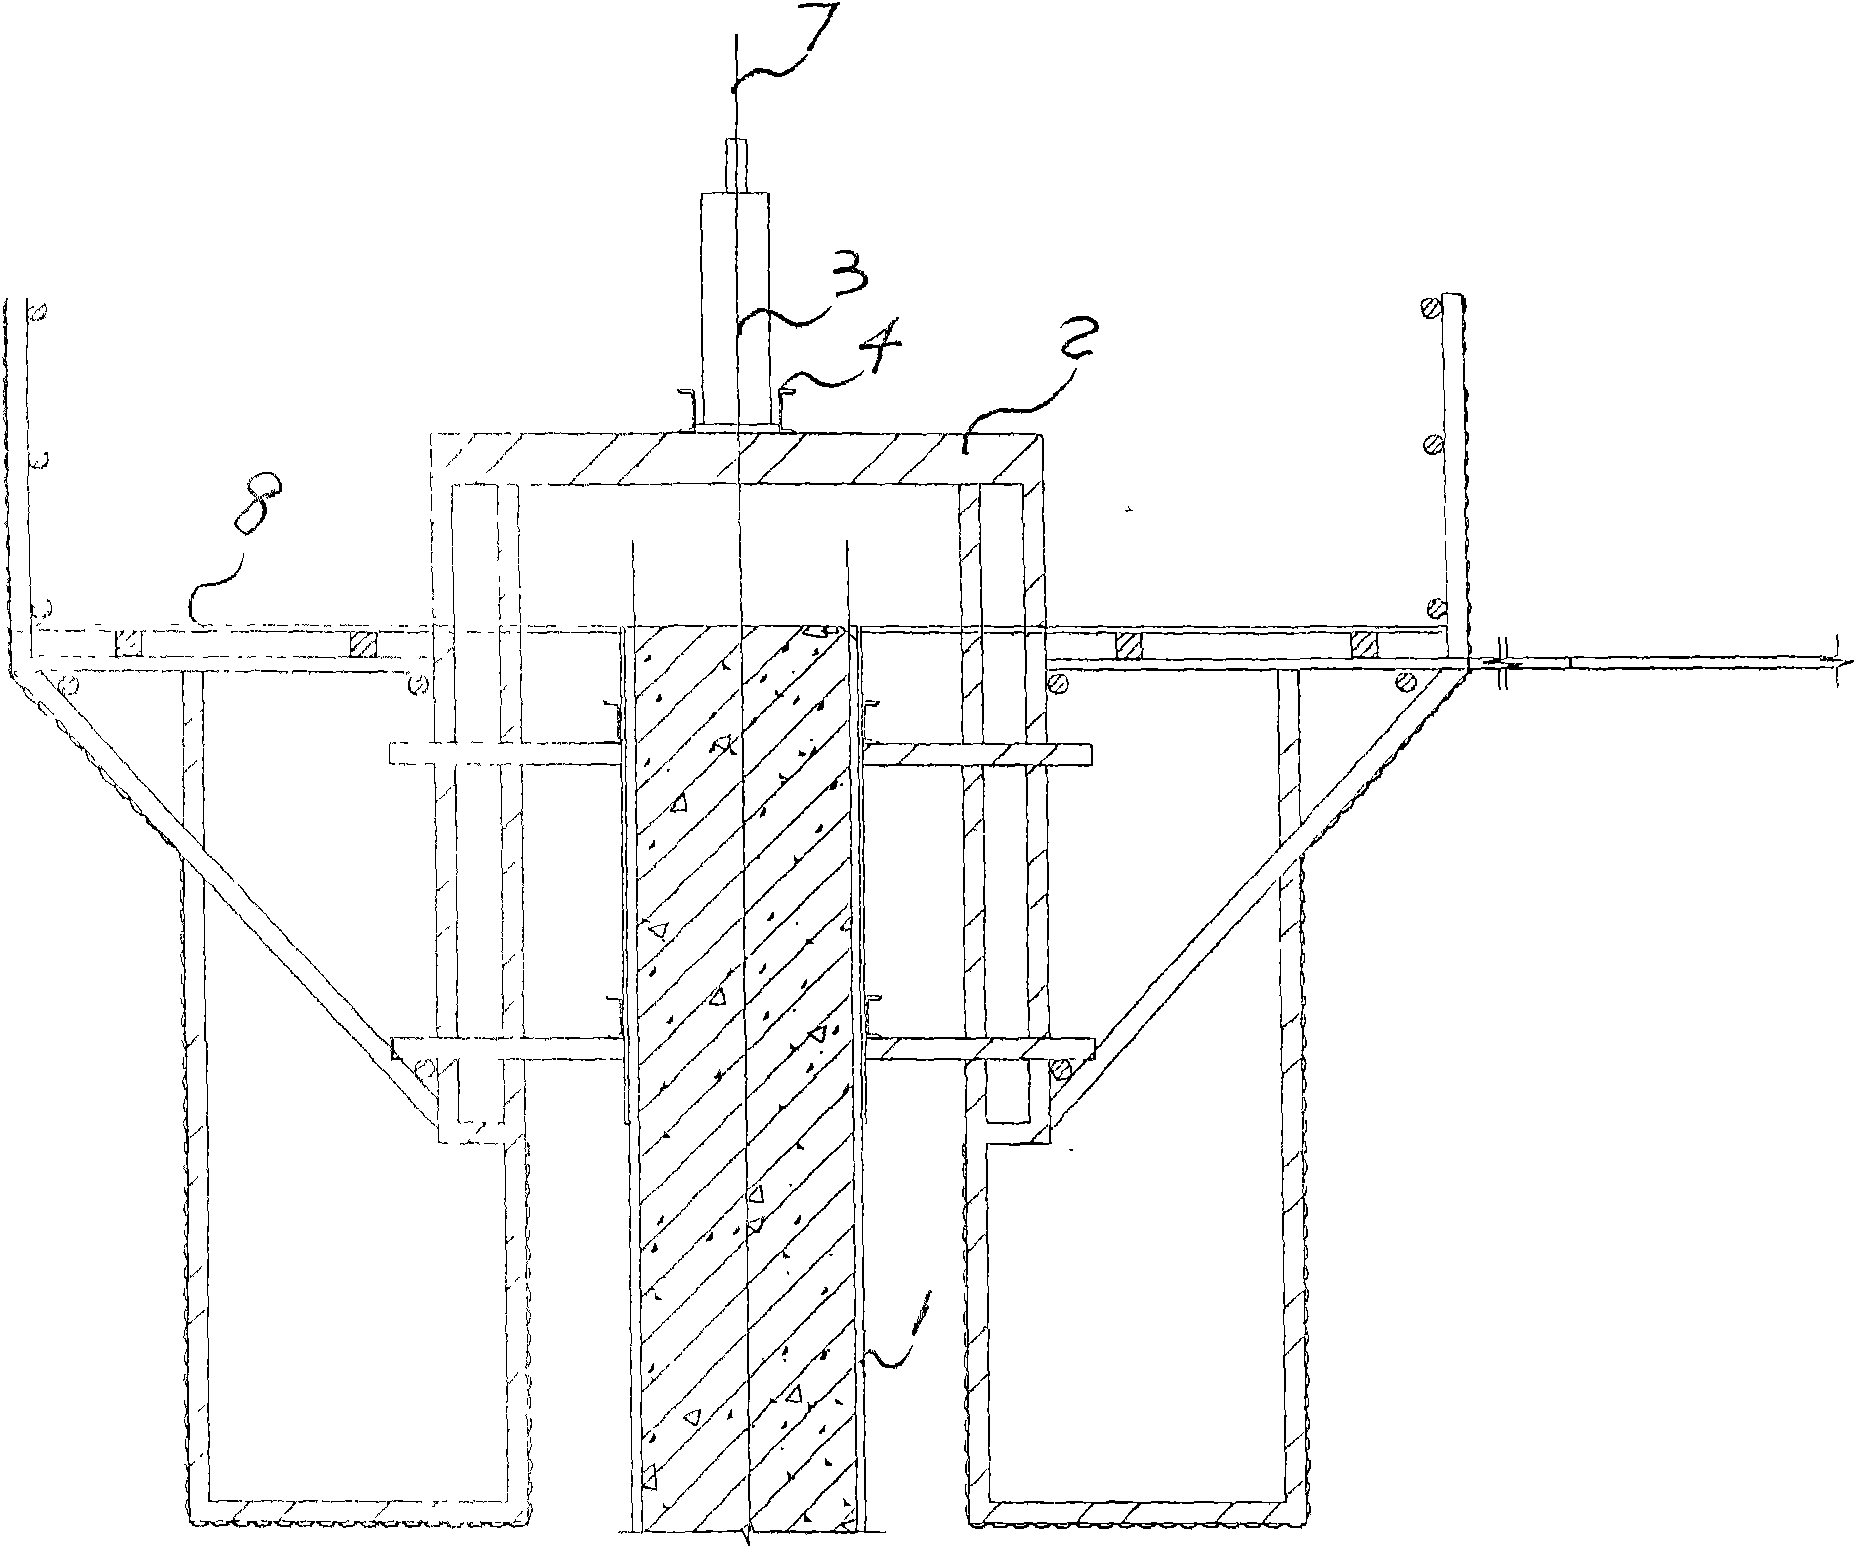 Raising mechanism of slip form and steel framework